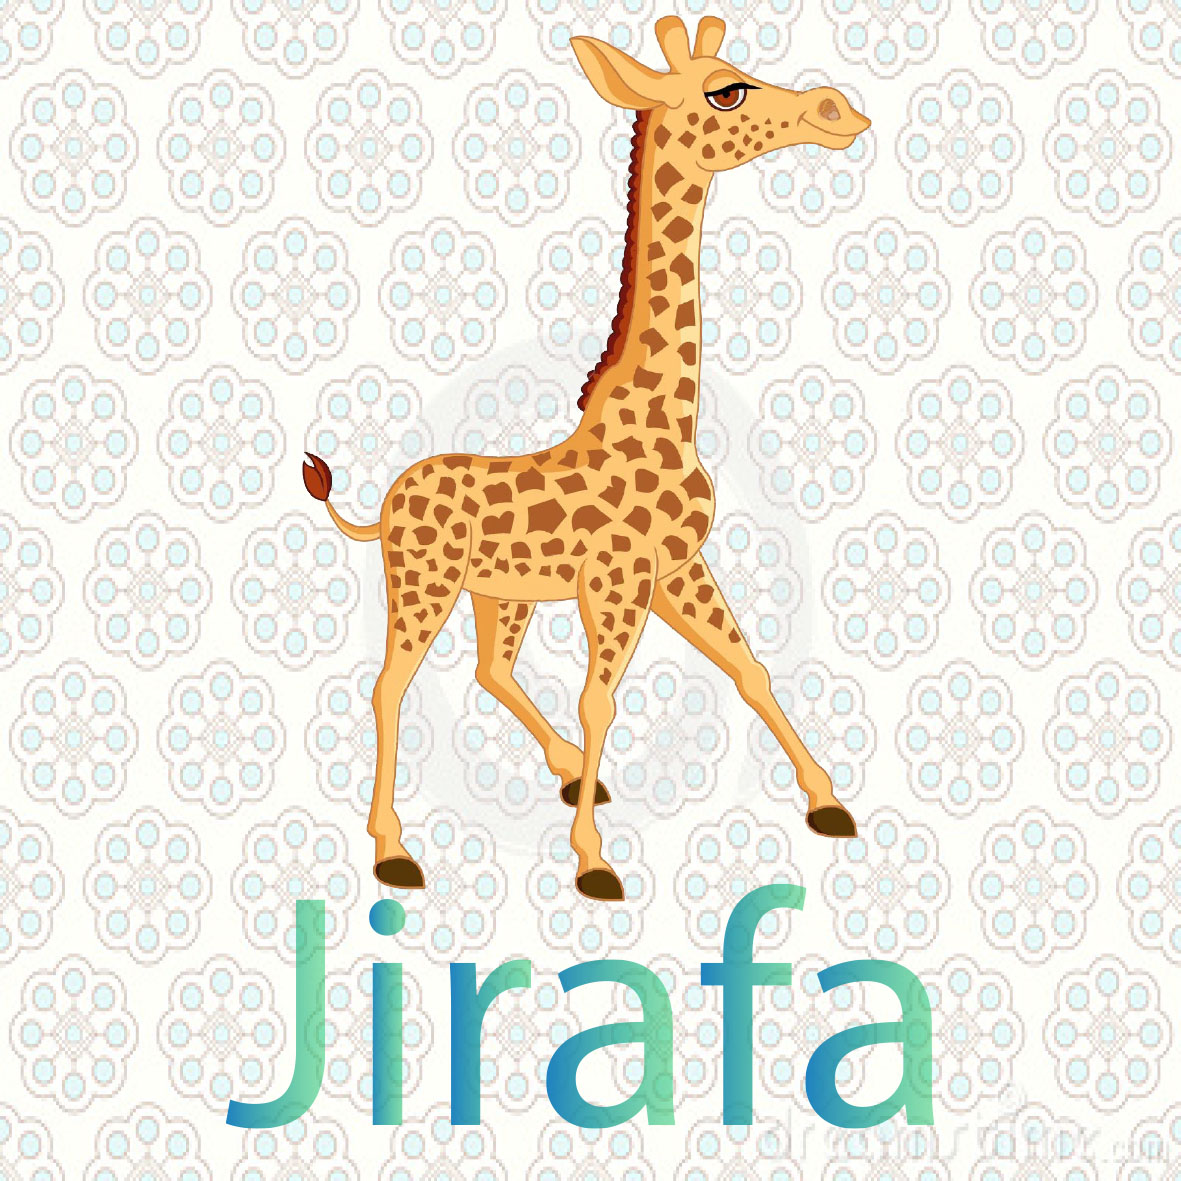 imagen de una jirafa, son los animales mas largos del mundo viven en el desierto de la sabana, se alimentan de ramas